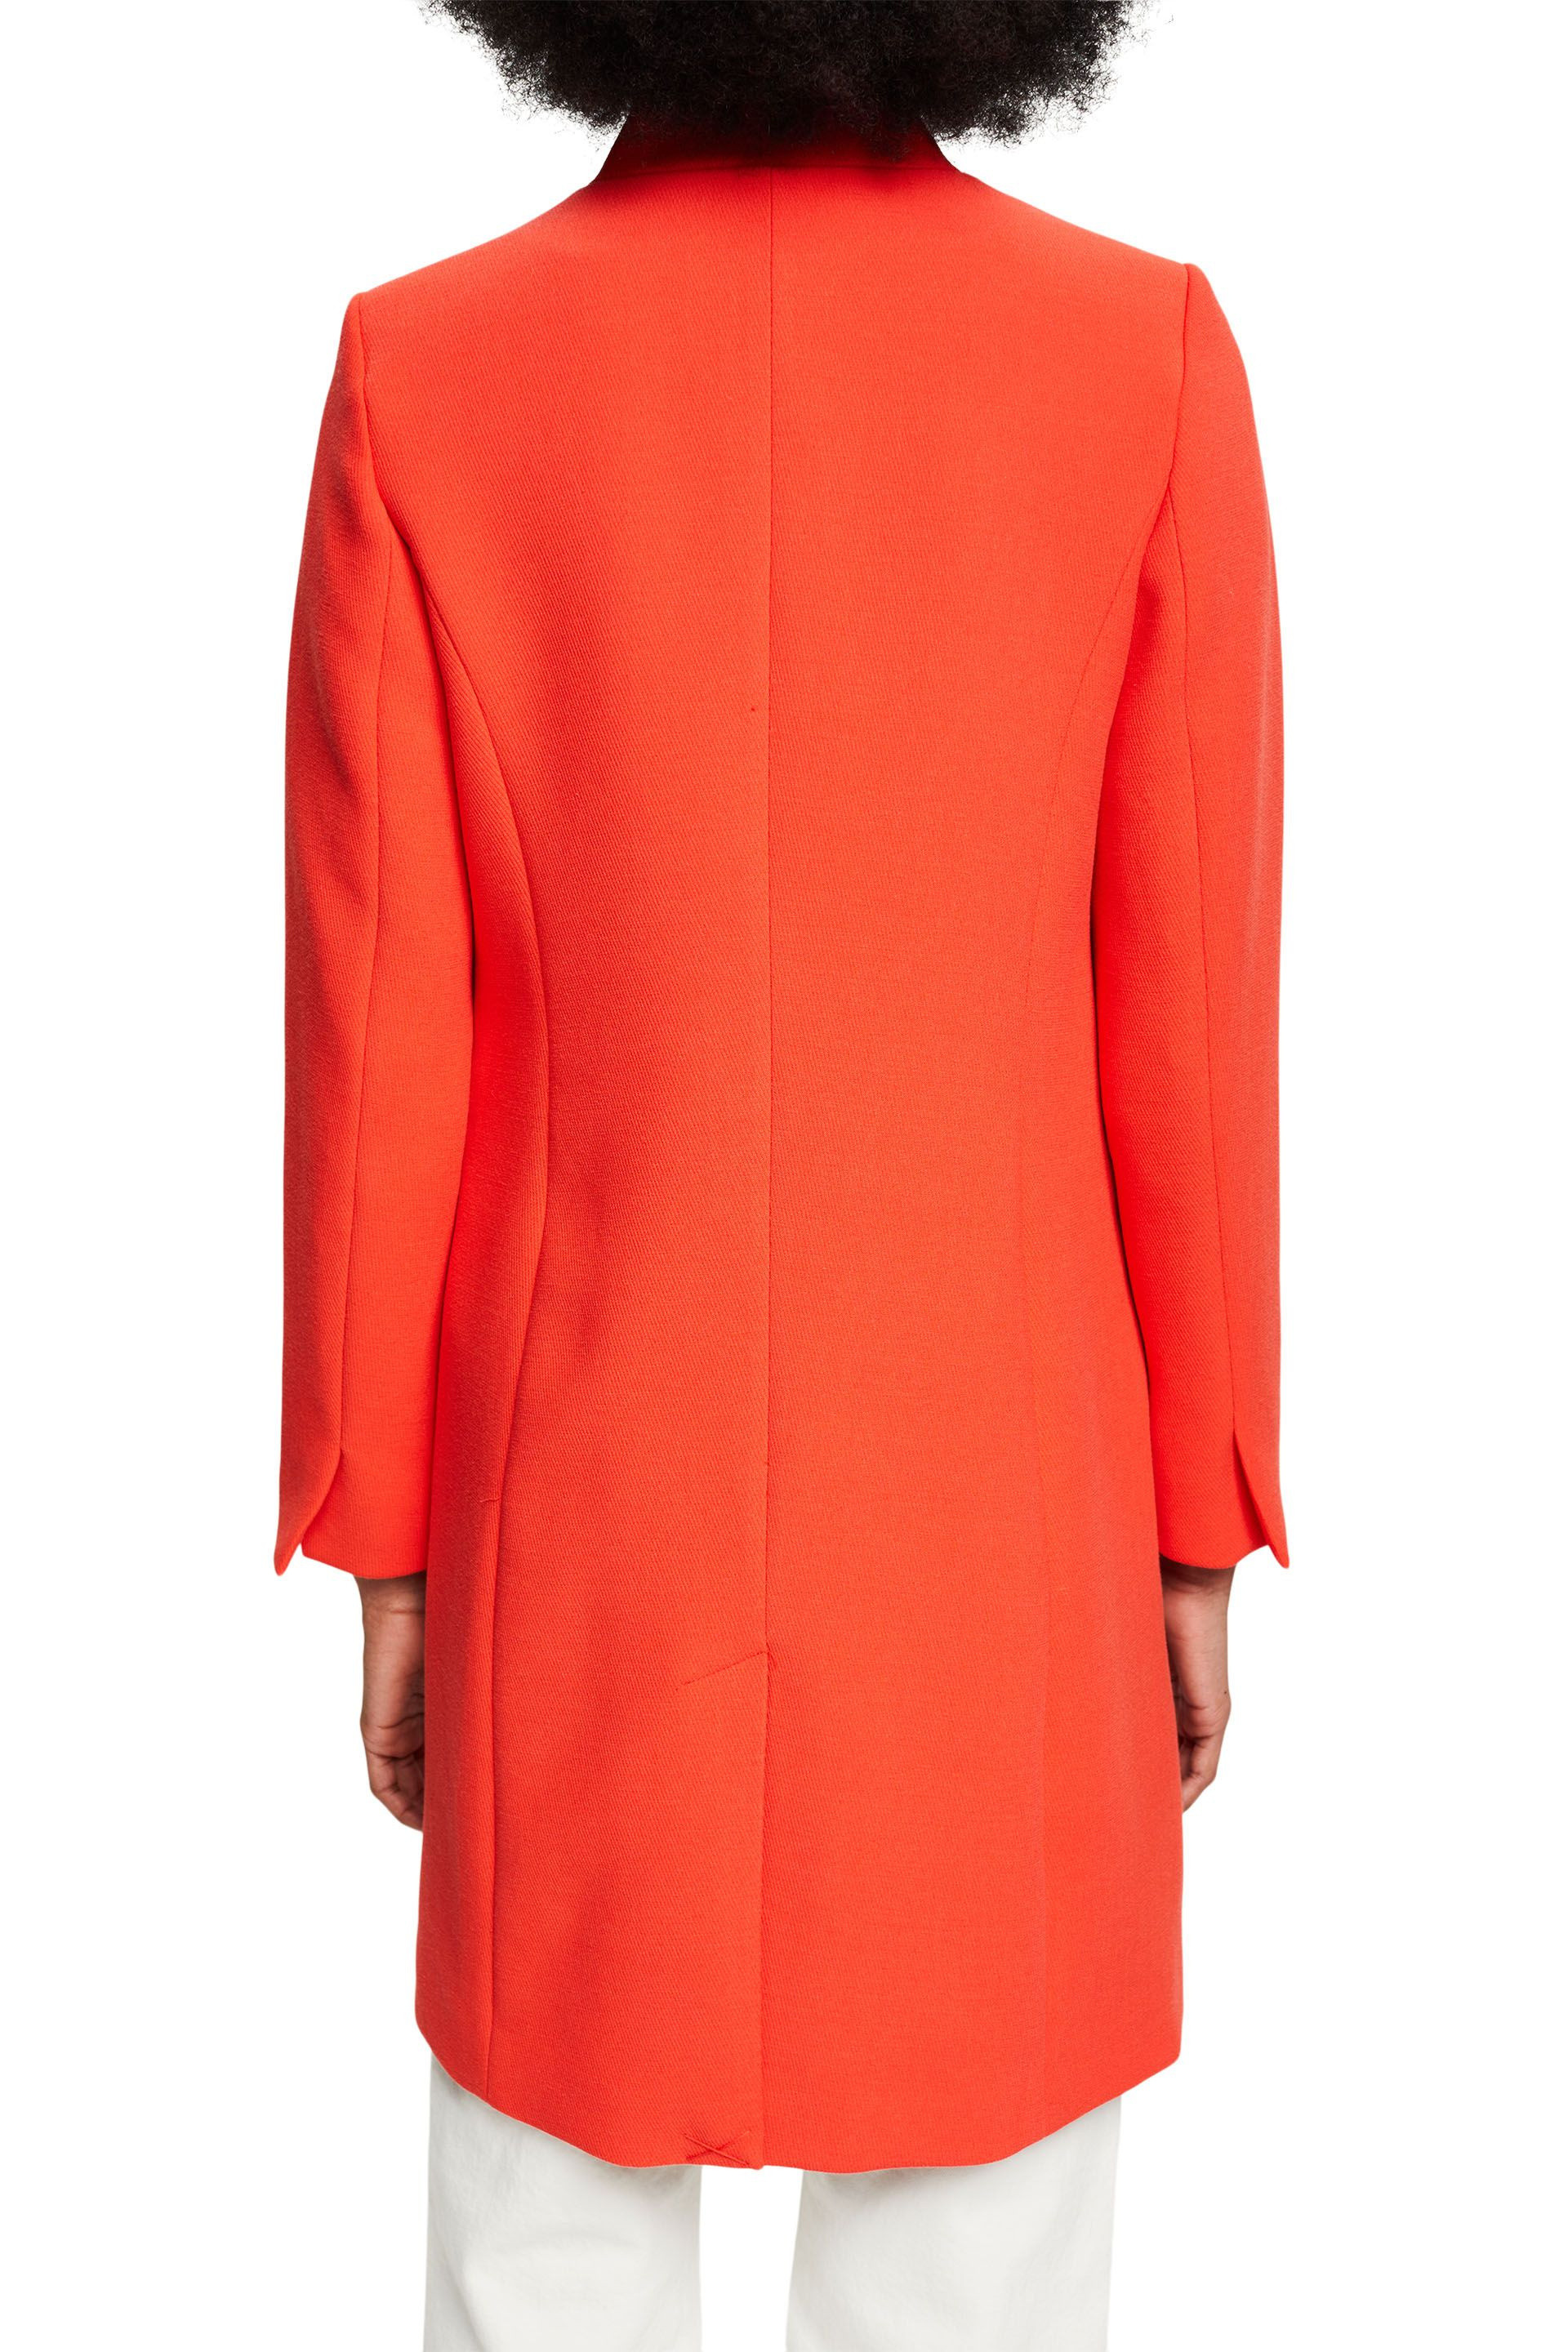 Cappotto sciancrato, Arancione, large image number 2